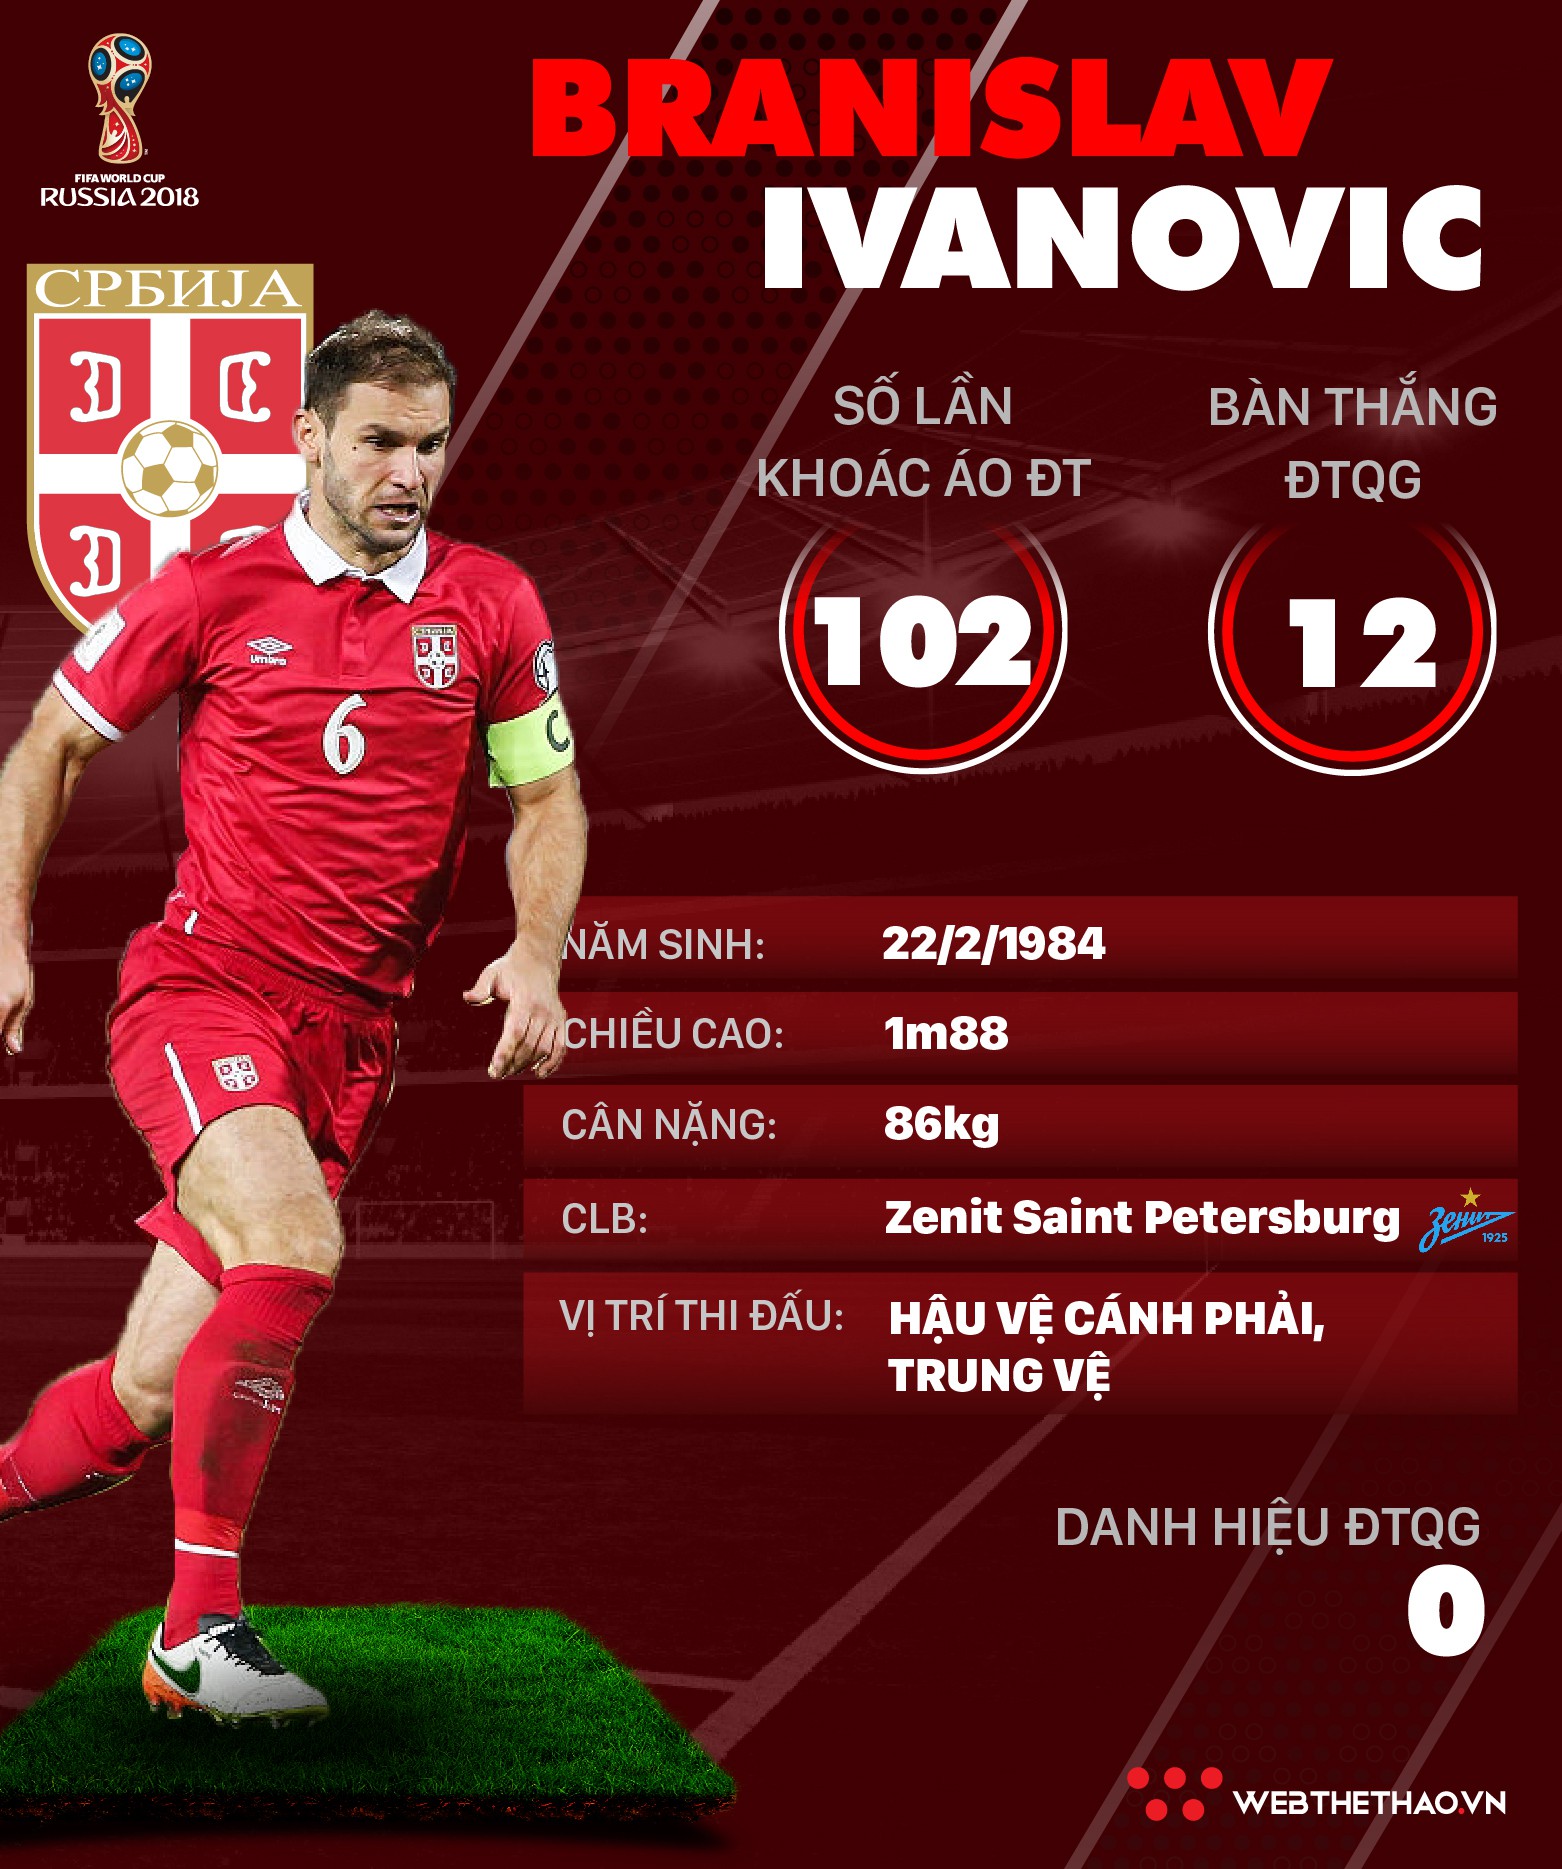 Thông tin cầu thủ Branislav Ivanovic của ĐT Serbia dự World Cup 2018 - Ảnh 1.